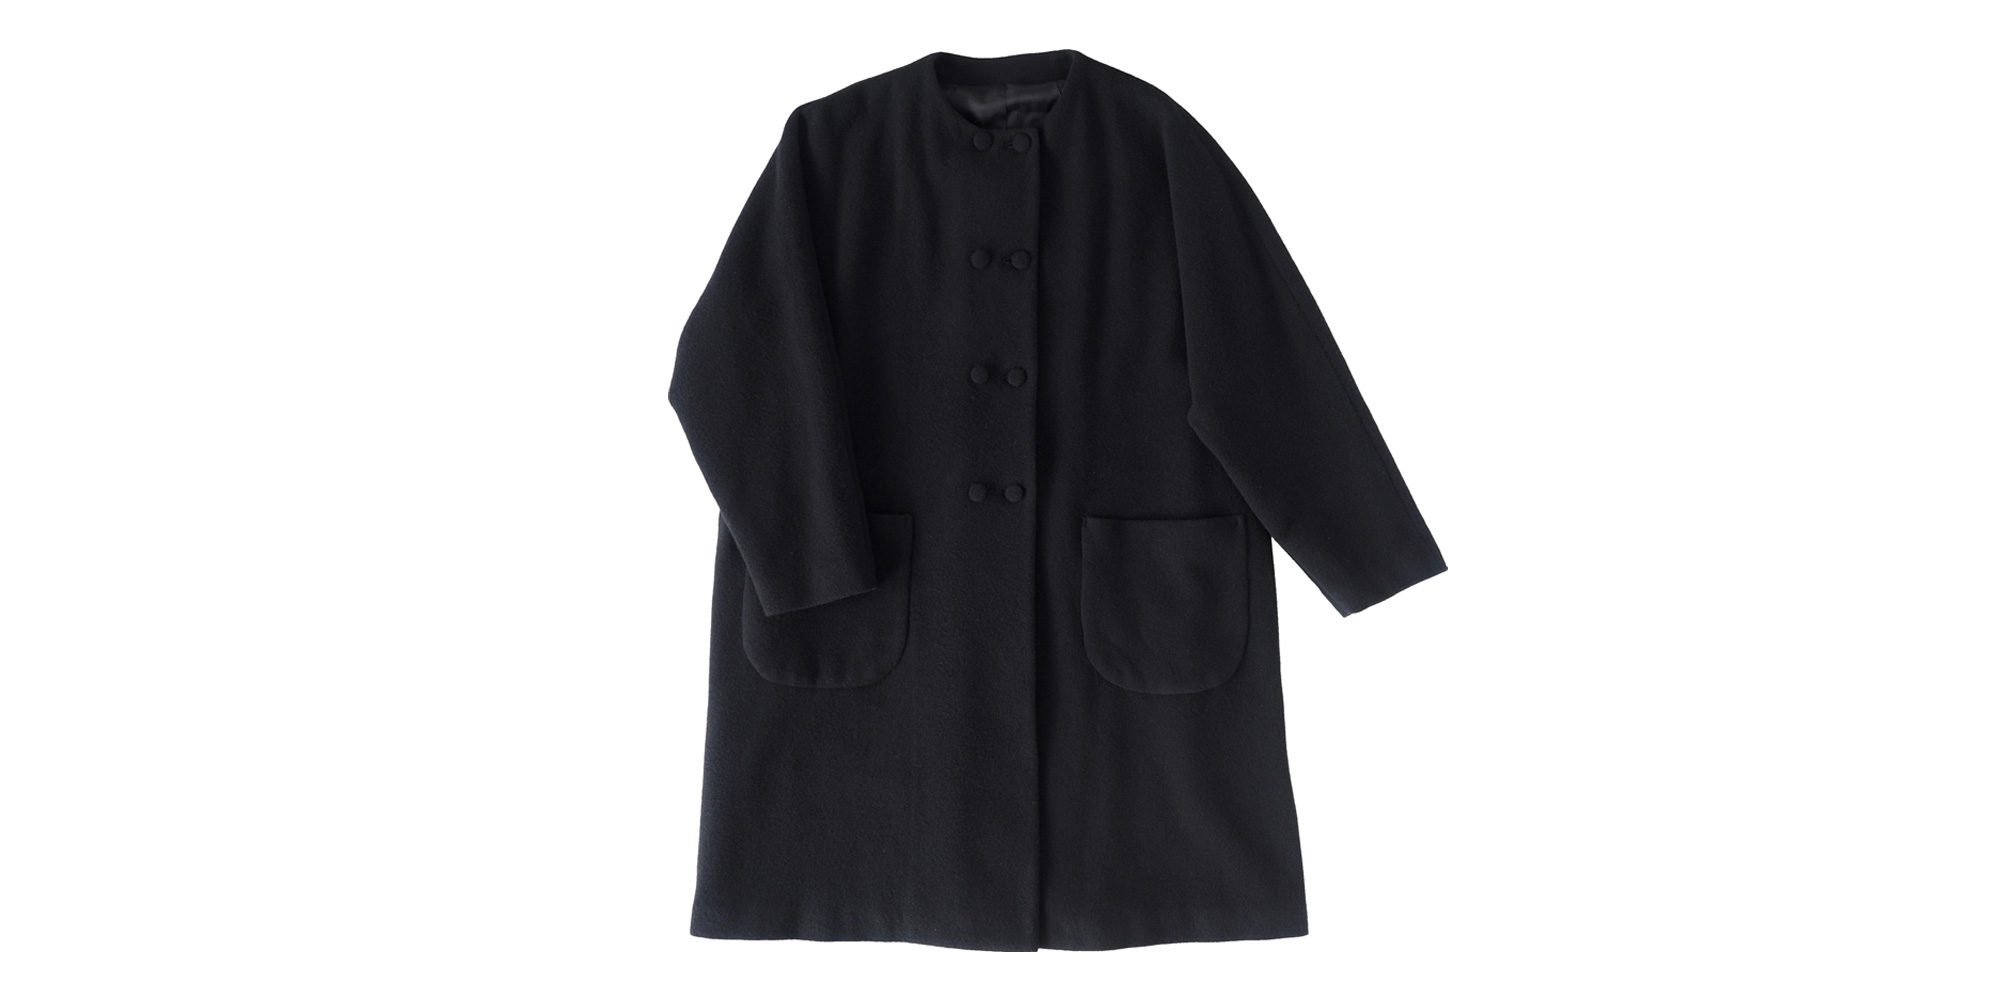 くるみボタンの襟なしコート | コート・ジャケット | イオグラフィック ネットショップ